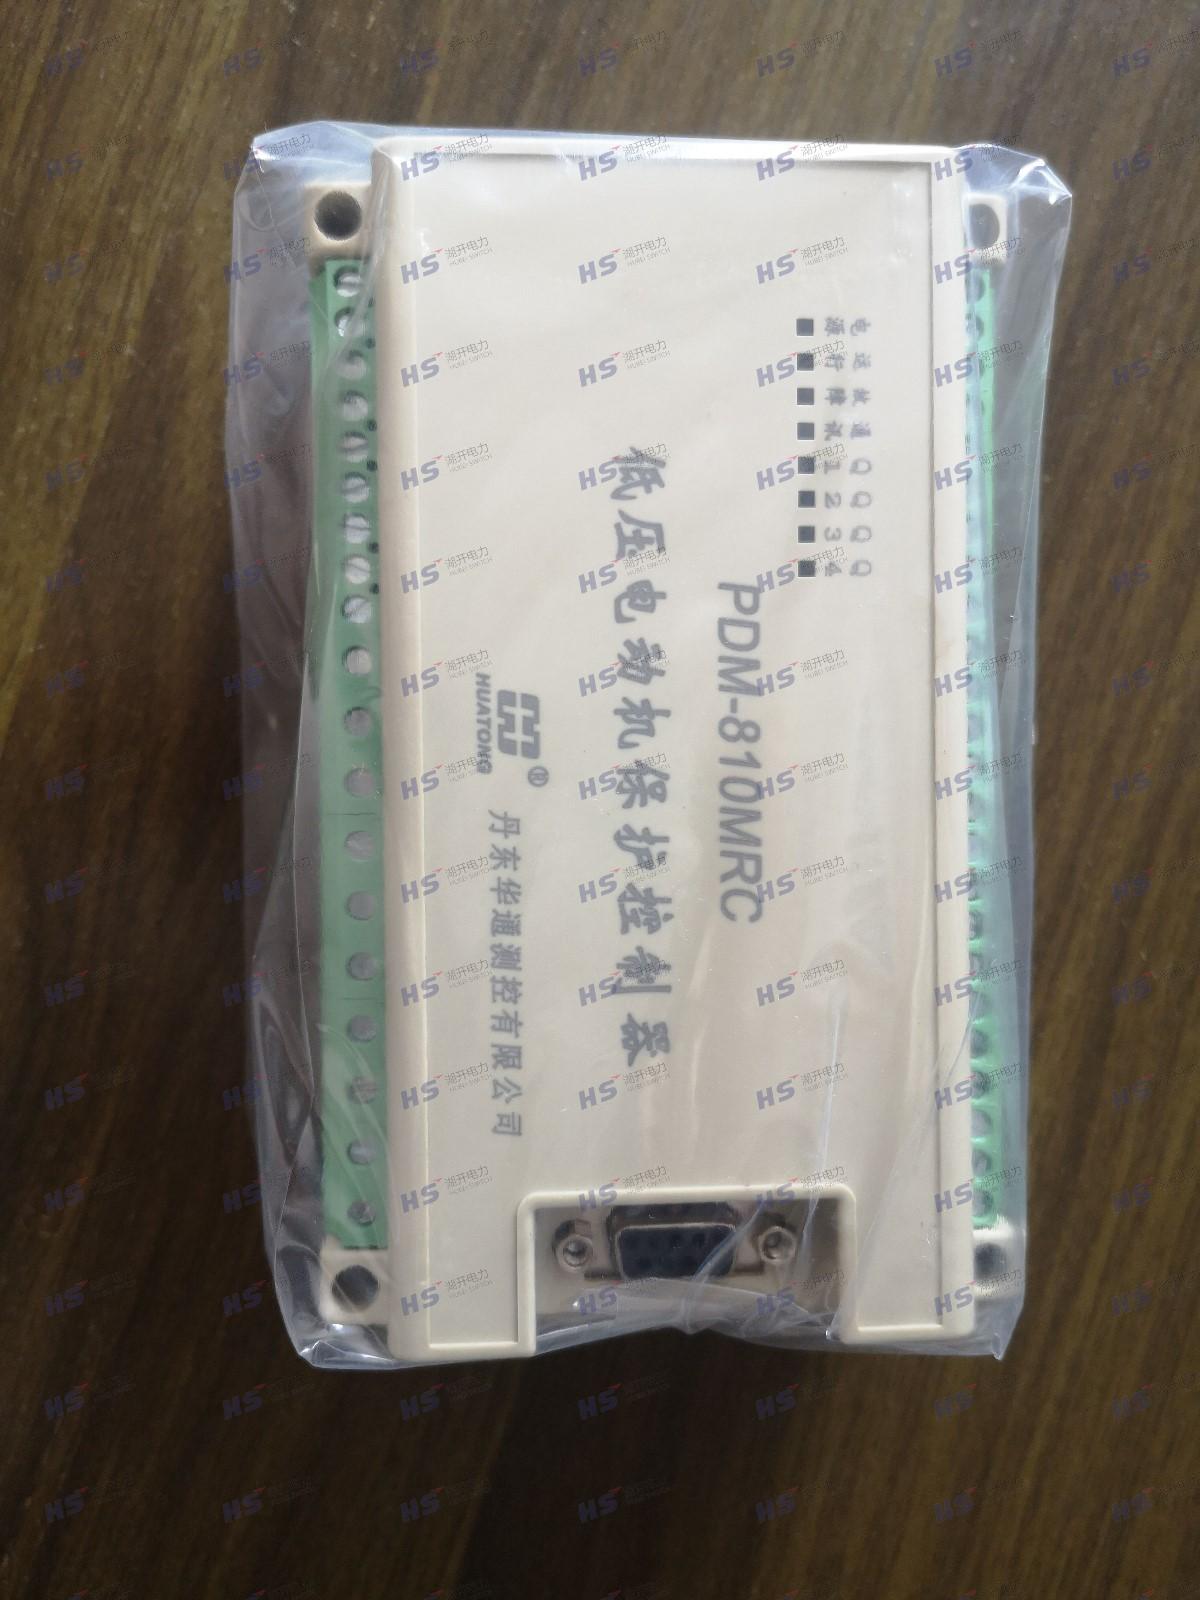 丹东华通PDM-810MRK一体化数字式电动机保护器